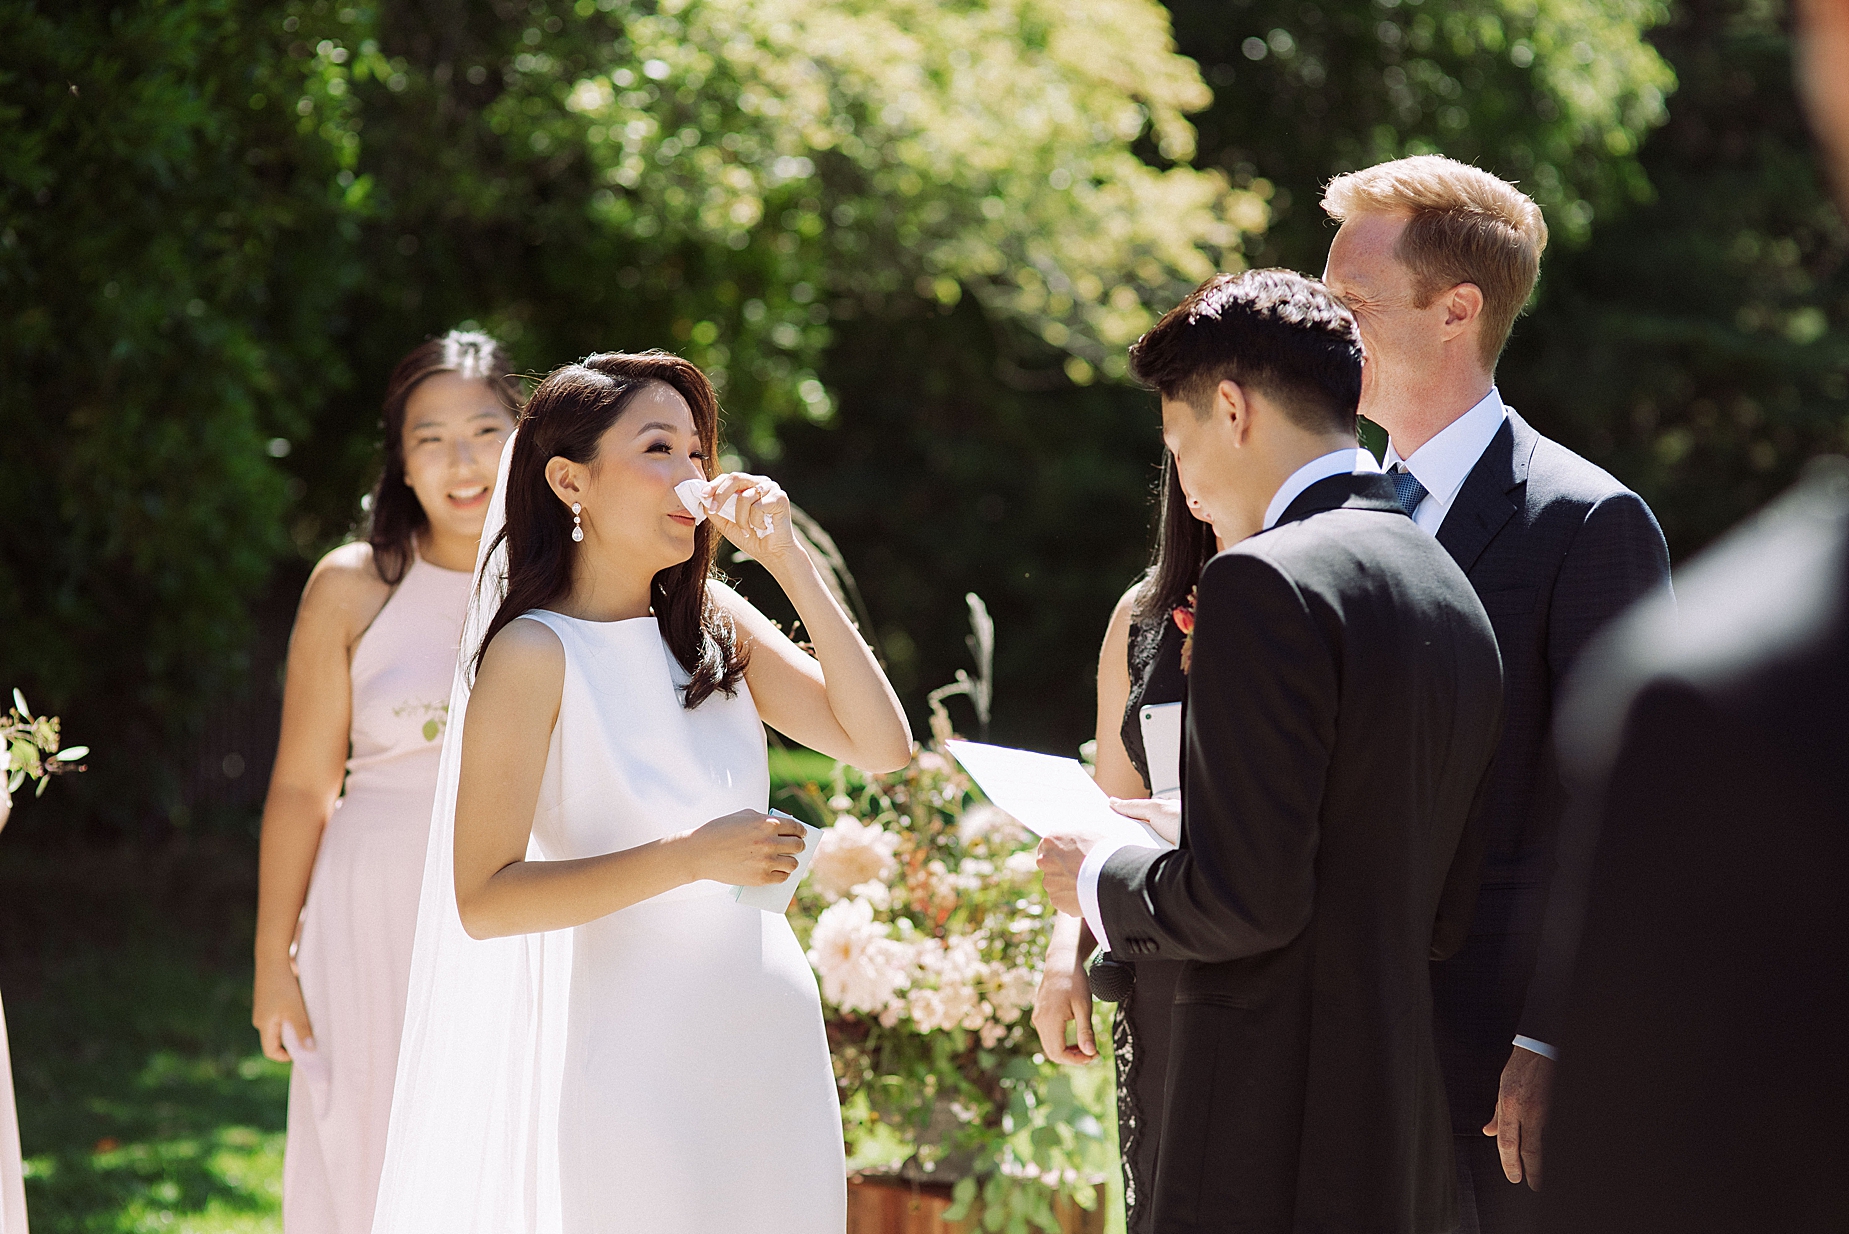 organic marketing image of wedding ceremony 